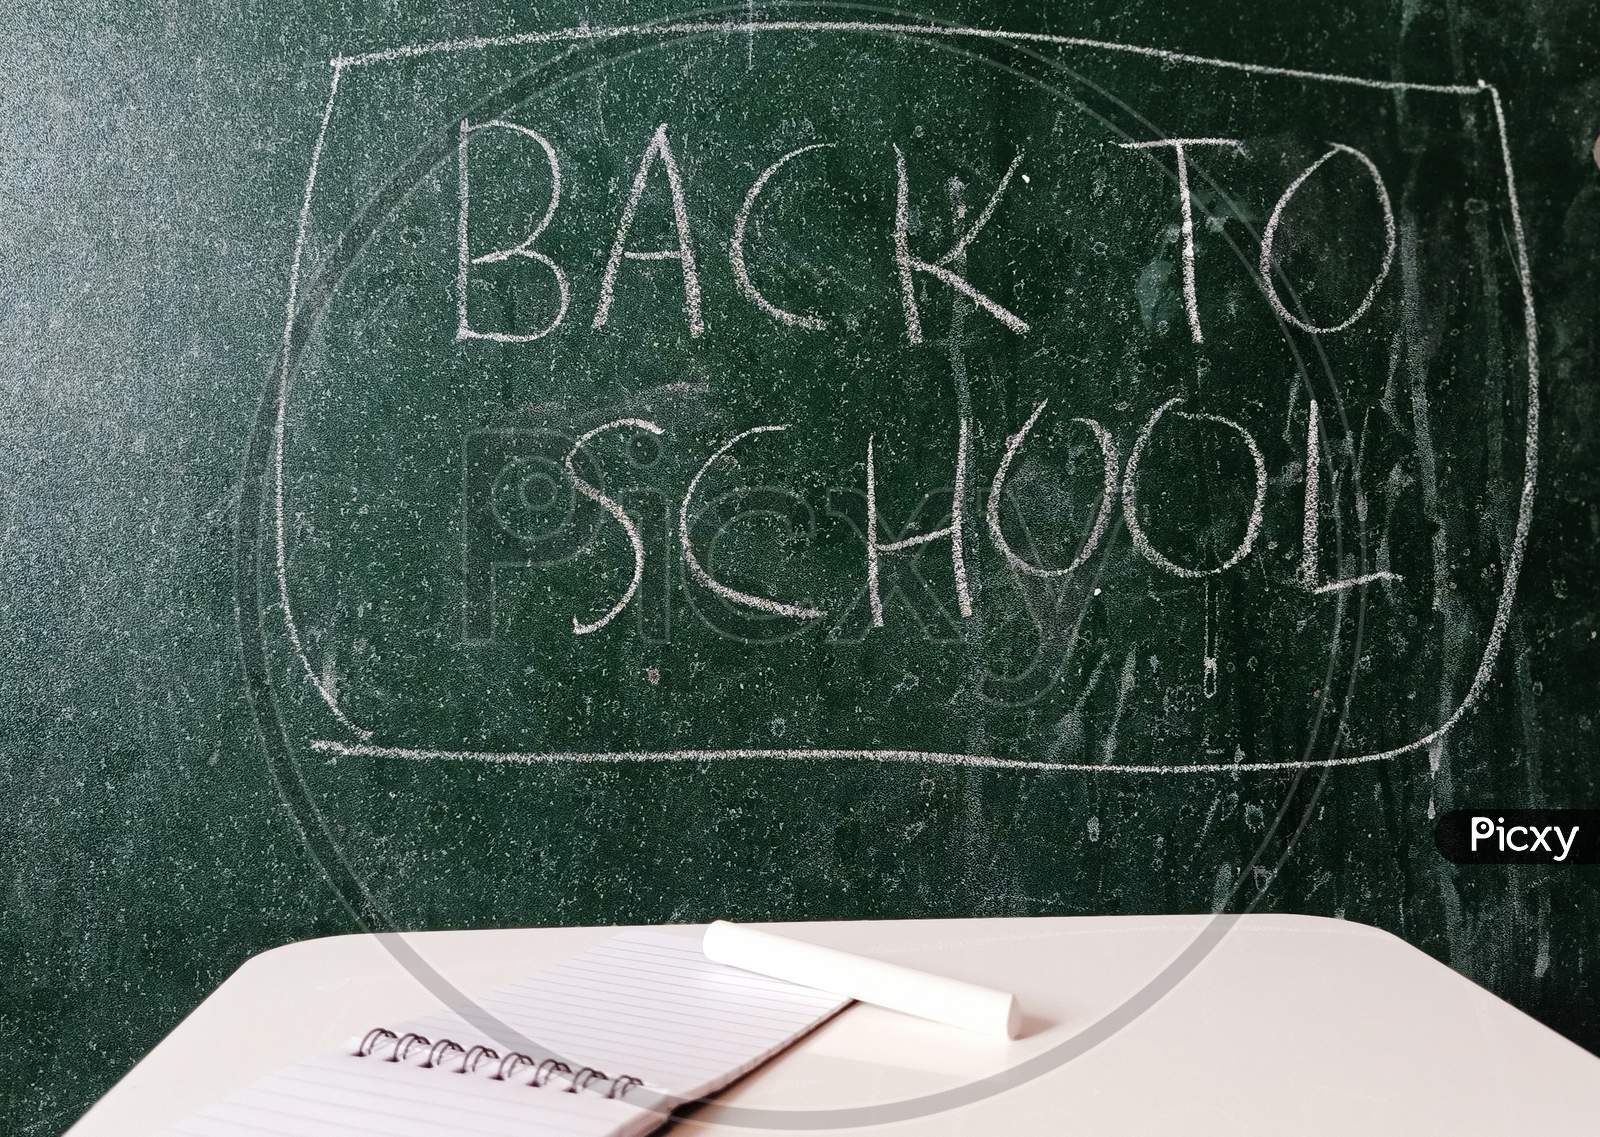 Back to School written on a chalkboard.